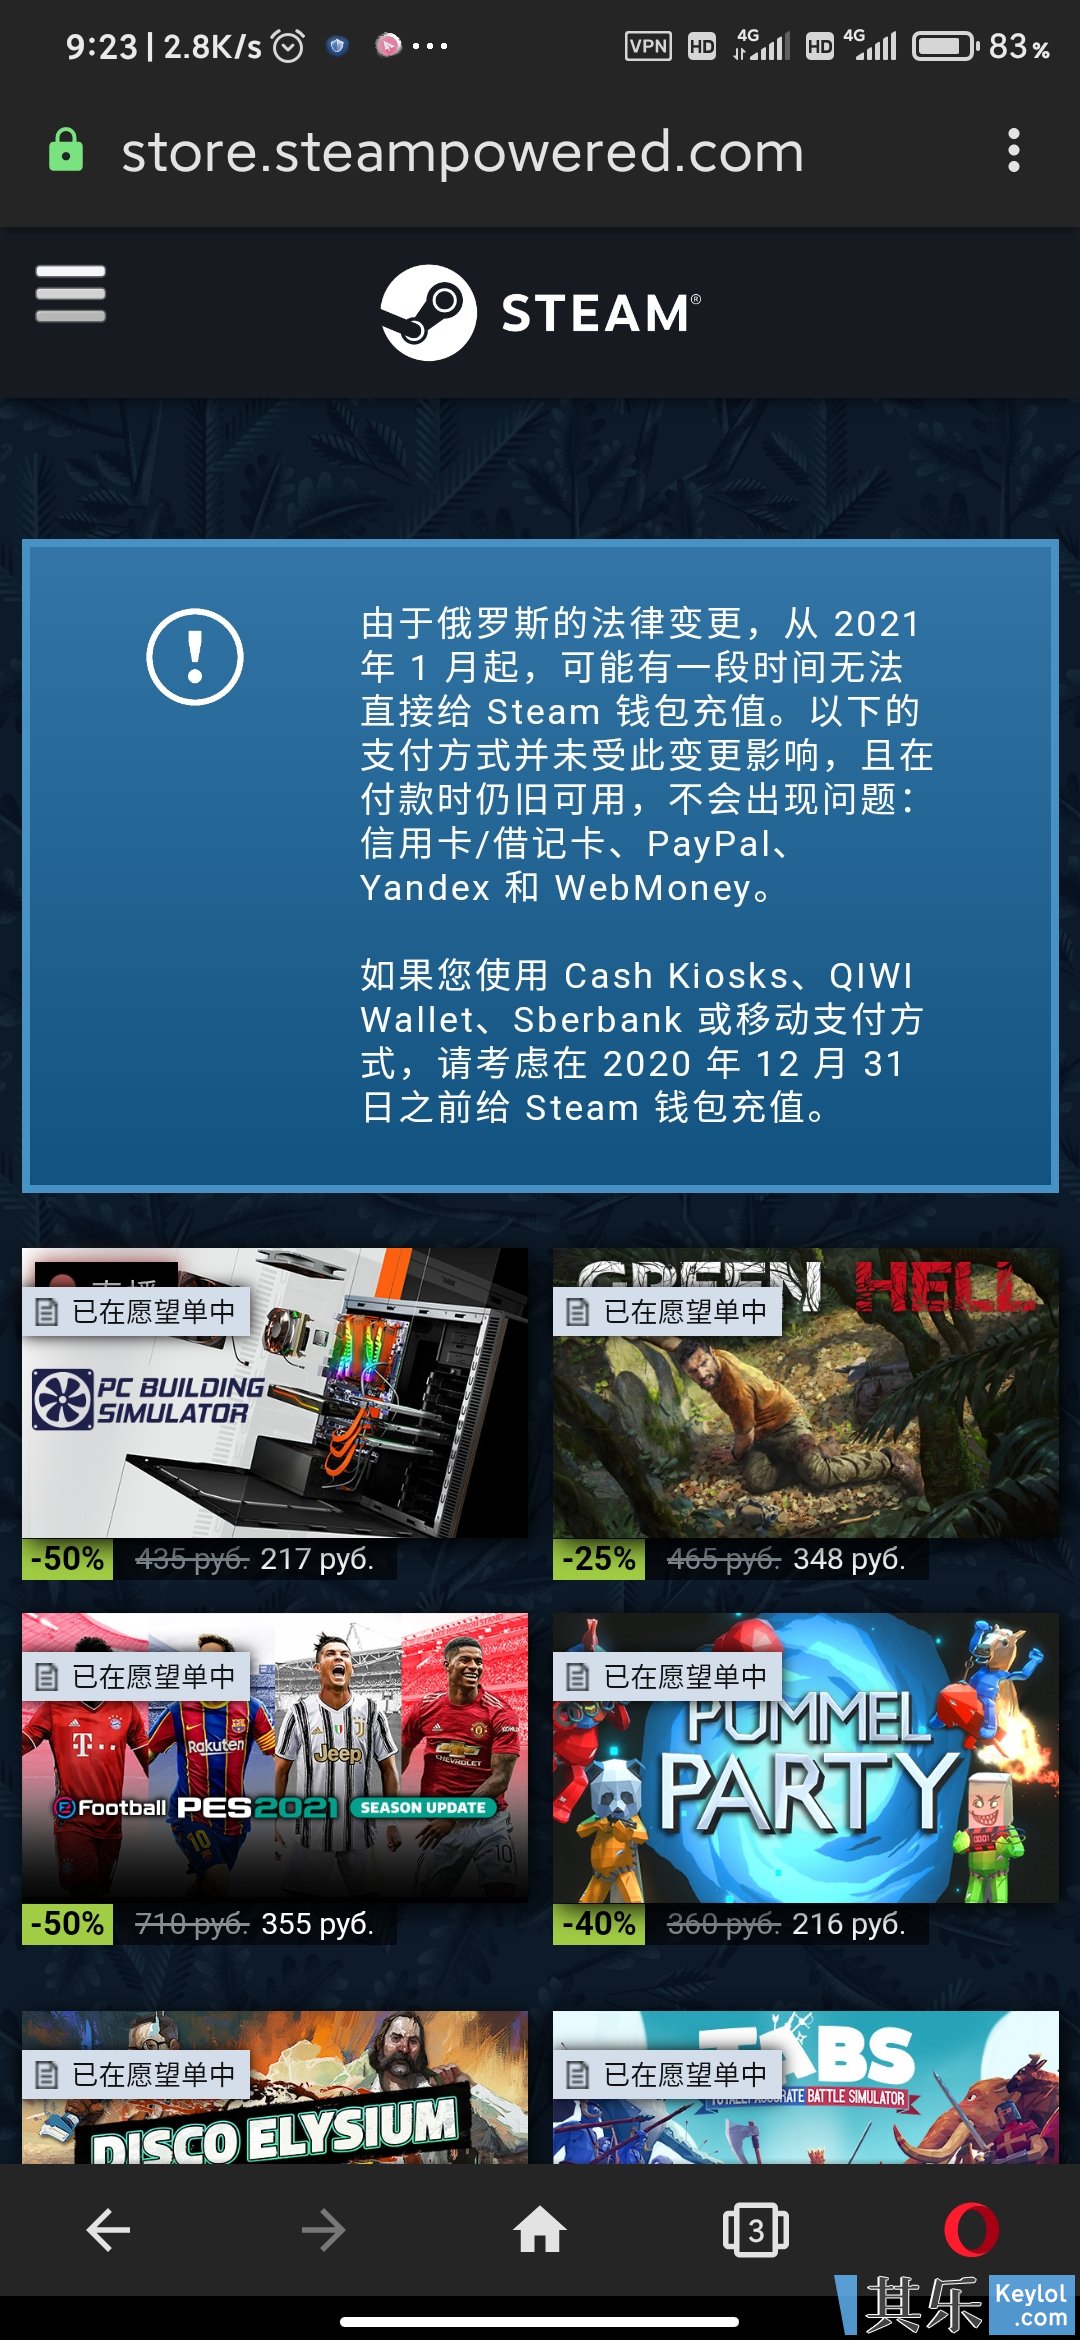 关于近期steam俄罗斯区政策变更 Steam官方已经更新了中文版公告 购物心得 其乐keylol 驱动正版游戏的引擎